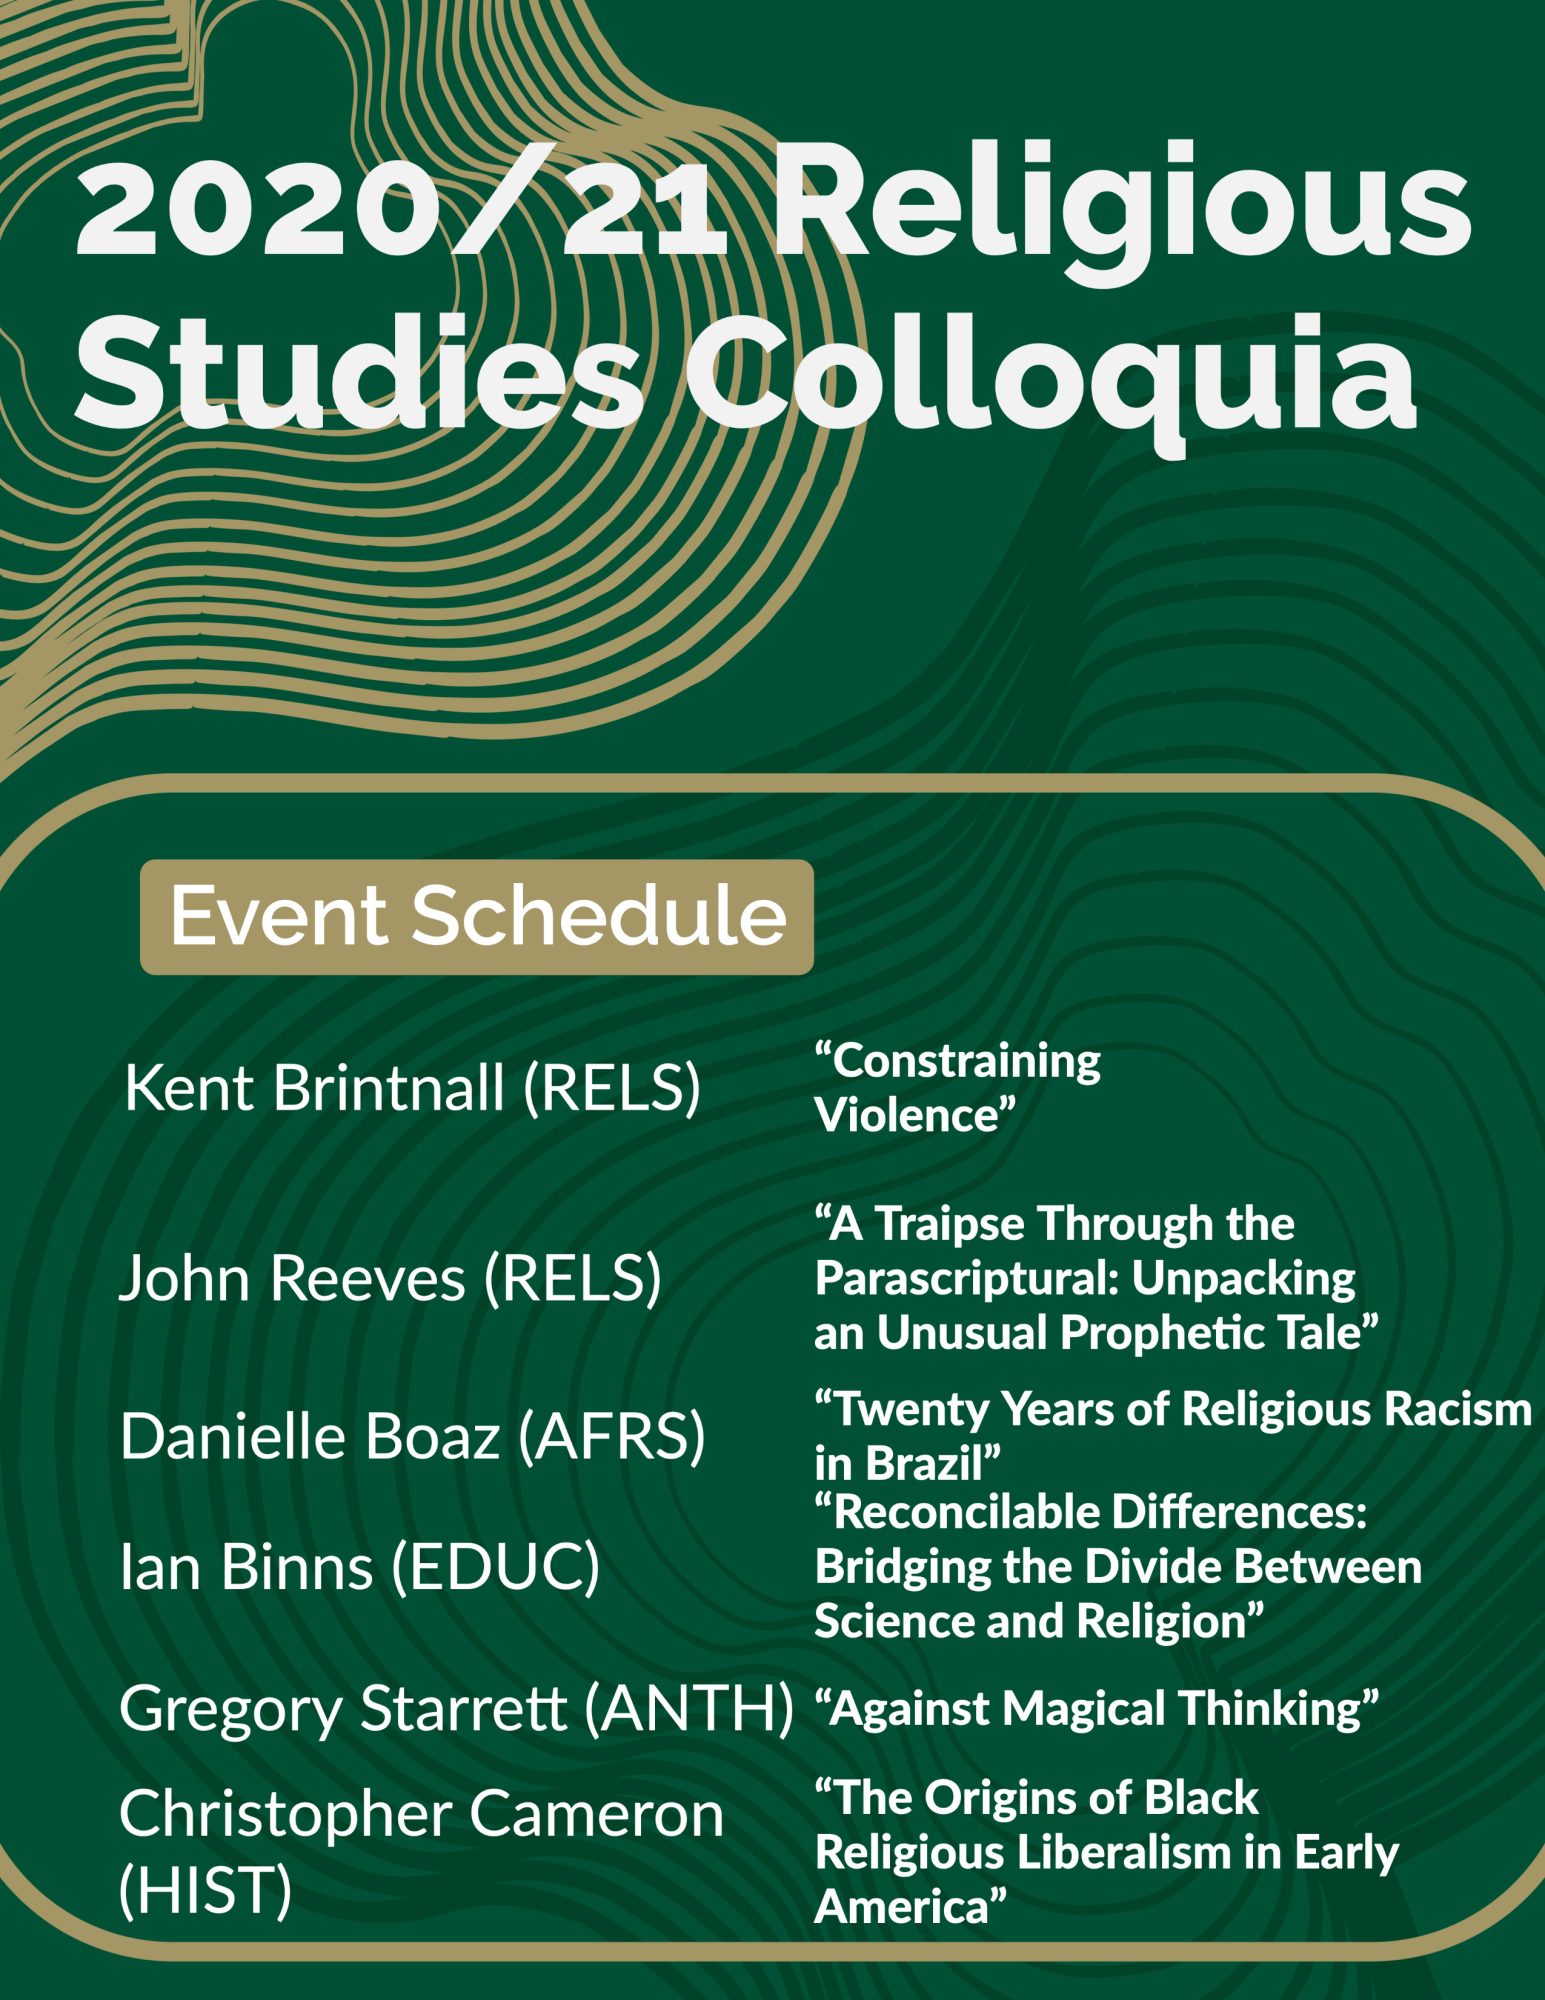 2020/21 Religious Studies Colloquia
Event Schedule